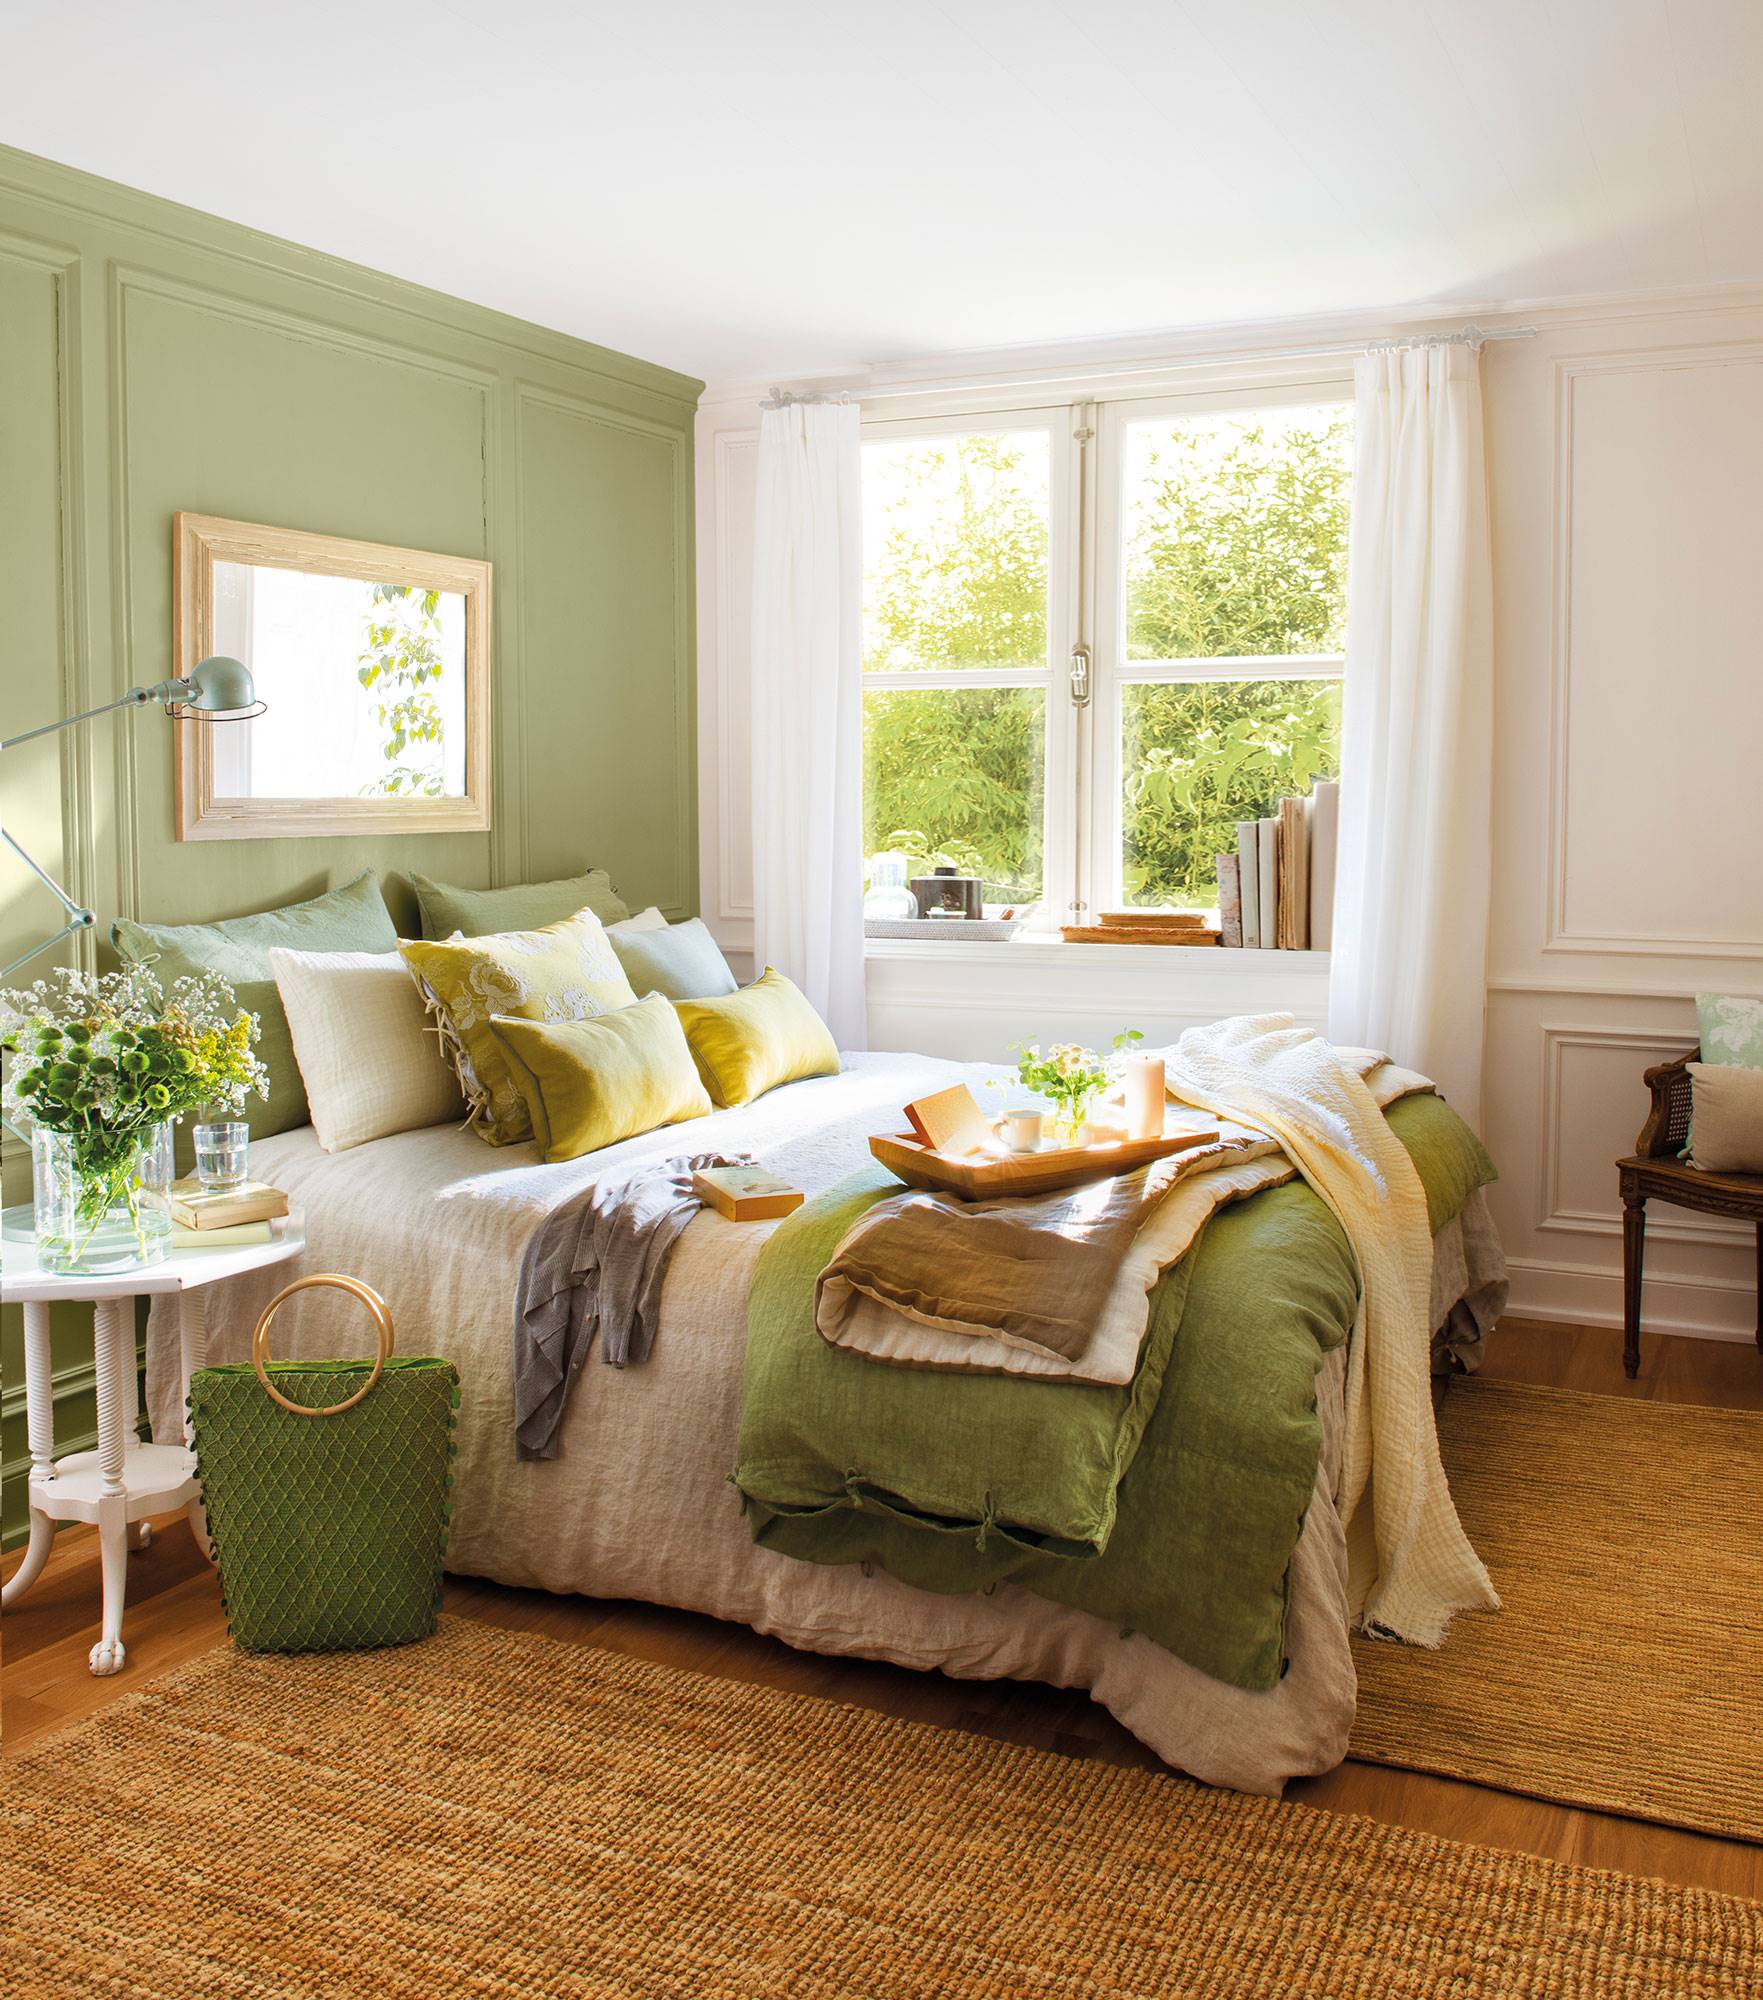 Dormitorio con pared del cabecero pintada en verde con molduras